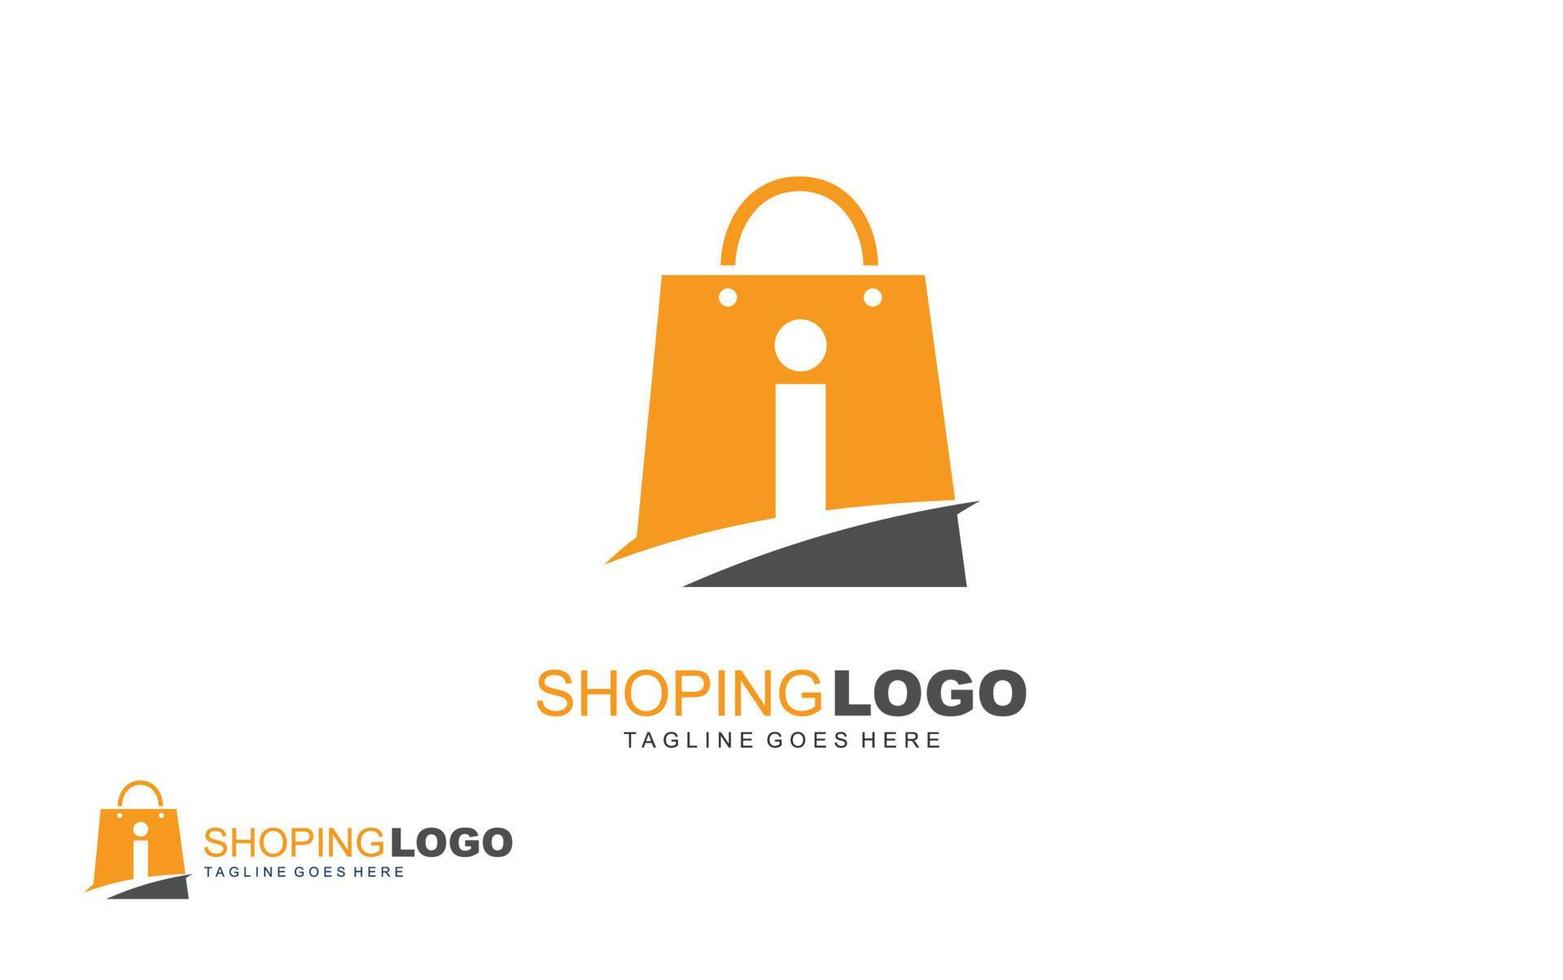 i logo onlineshop para empresa de marca. ilustración de vector de plantilla de bolsa para su marca.